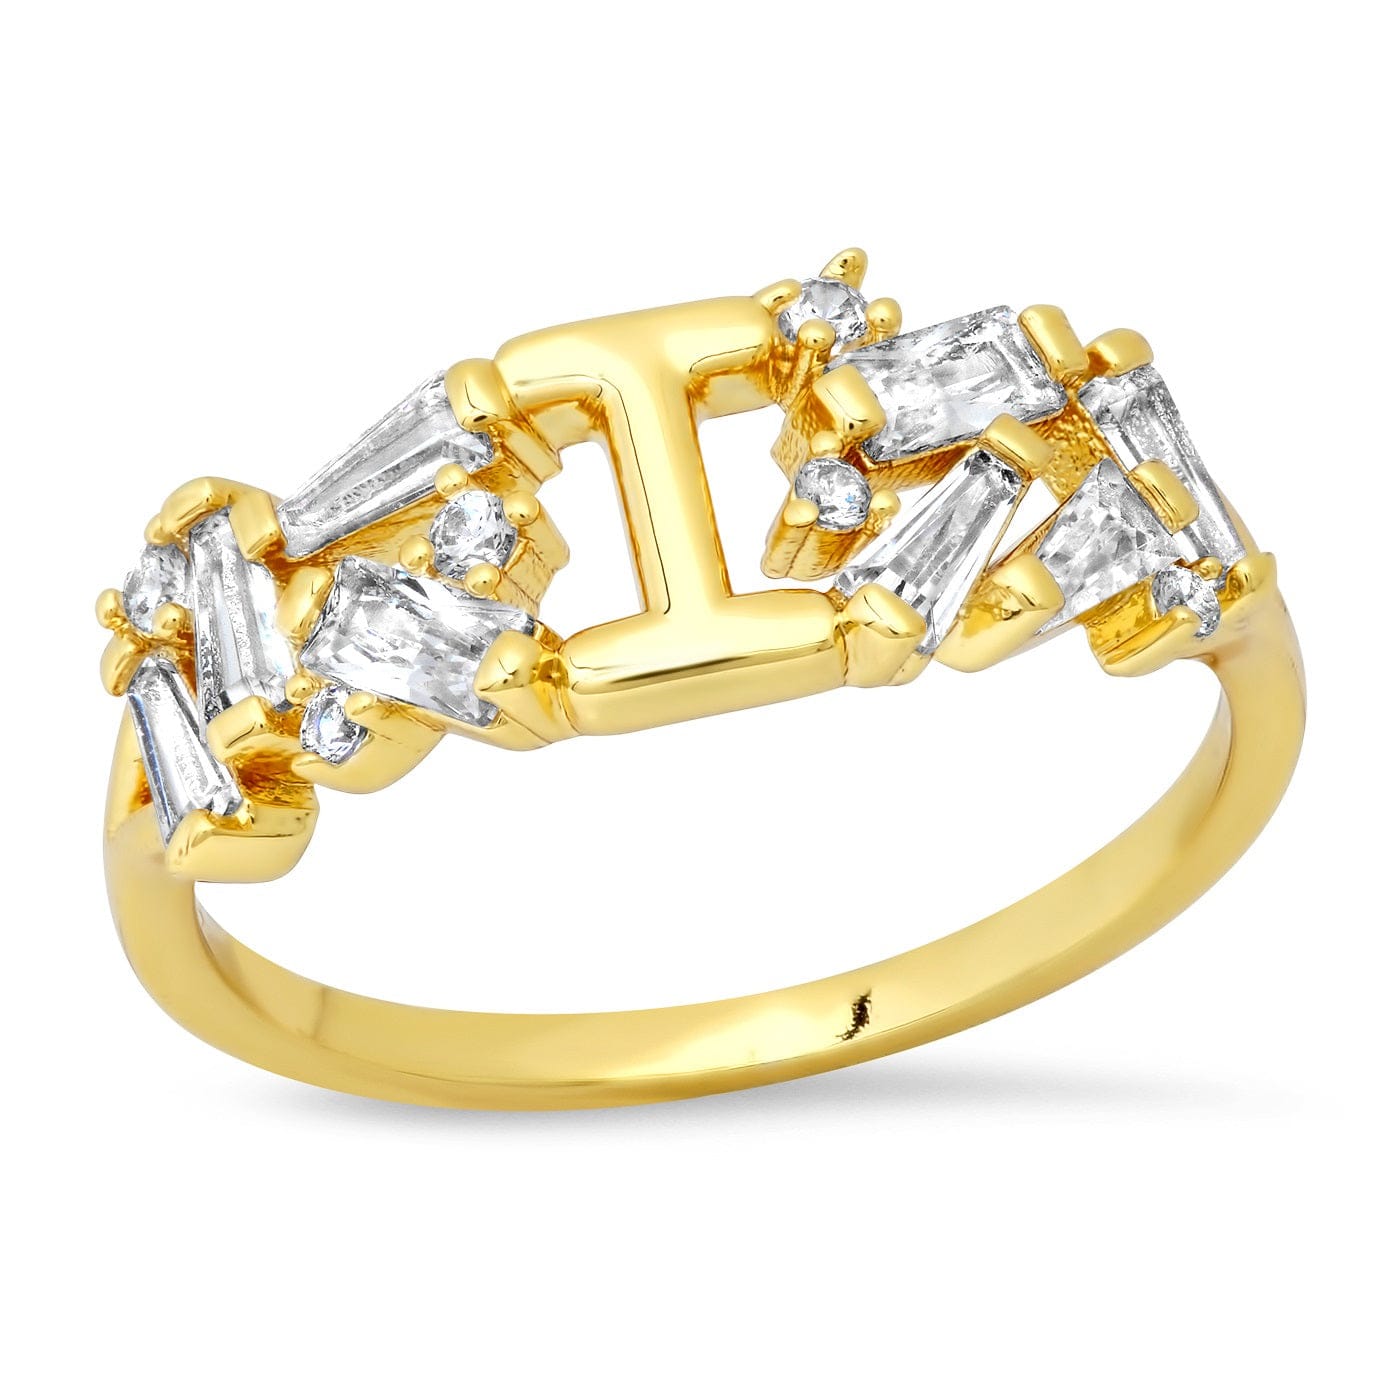 TAI JEWELRY Rings 6 / I Baguette Initial Ring